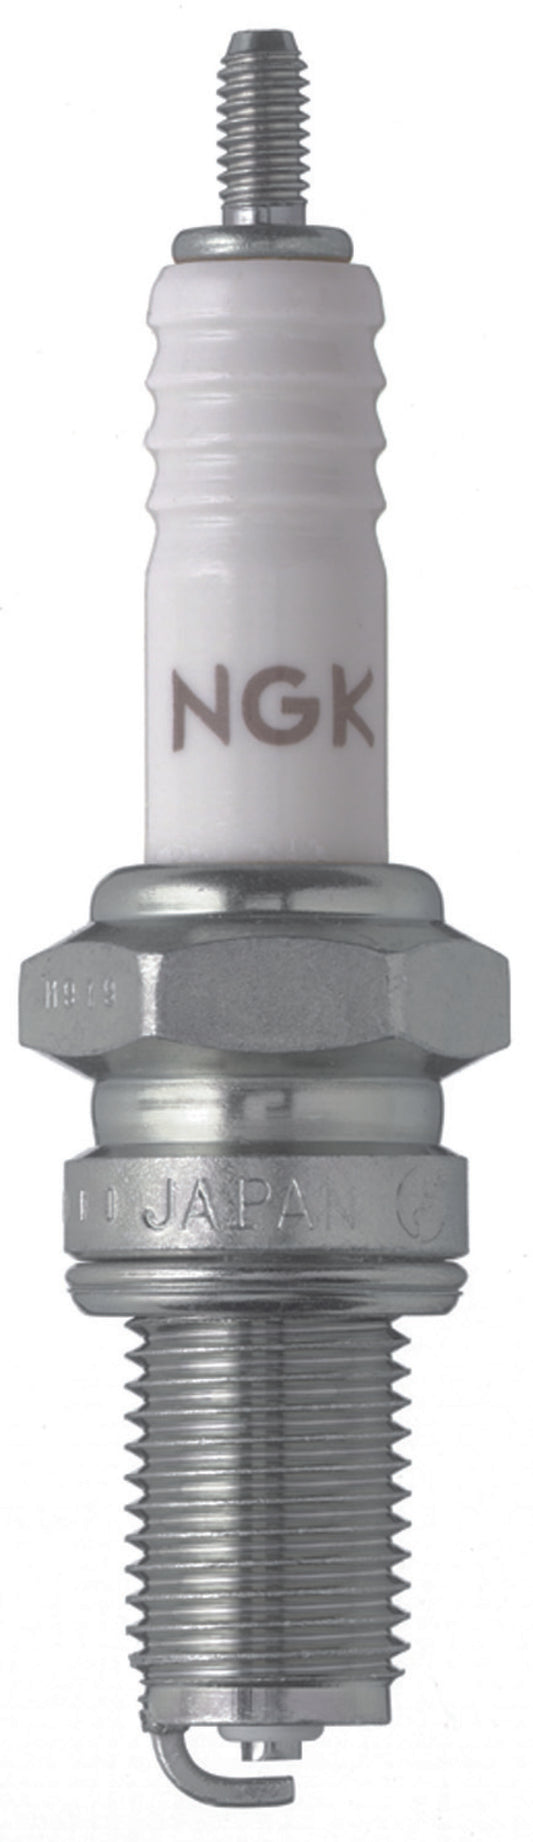 NGK Standard Spark Plug Box of 10 (D9EA)